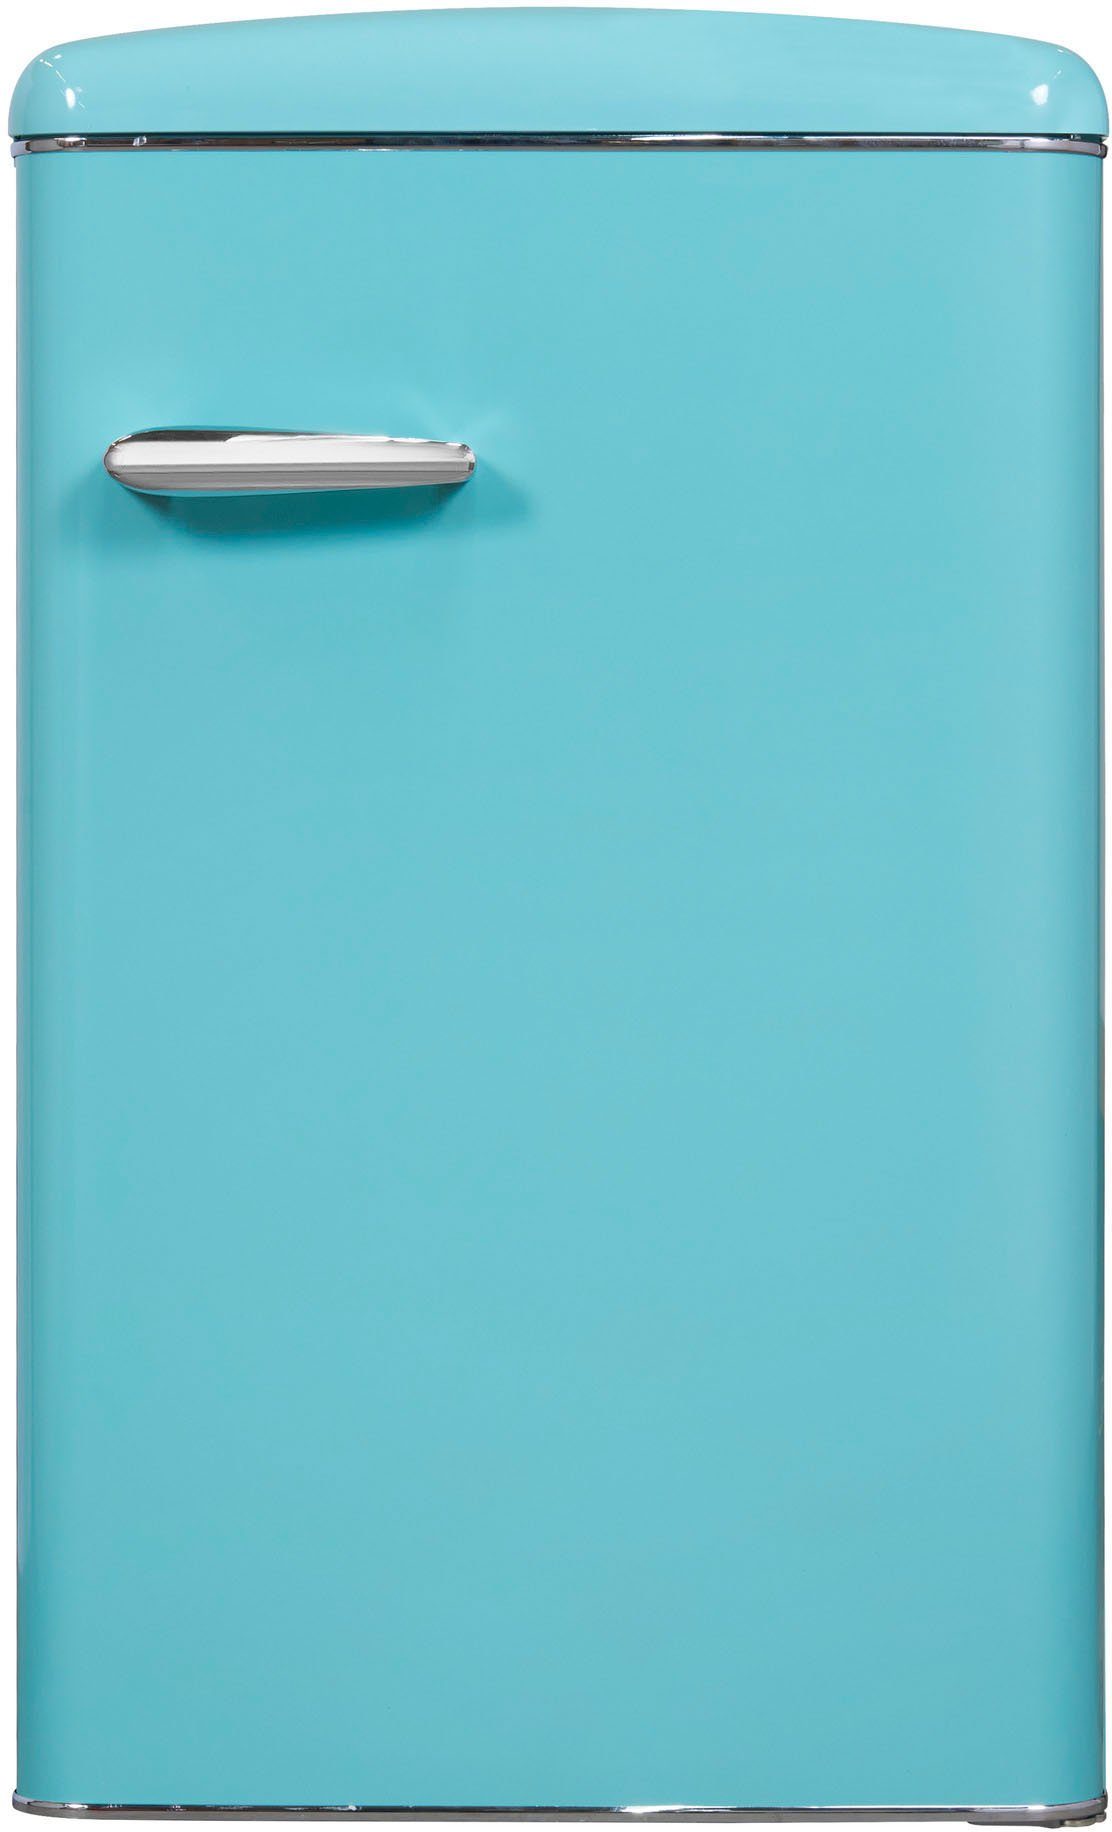 exquisit cm taubenblau, 89,5 hoch, RKS120-V-H-160F breit 55 cm Kühlschrank